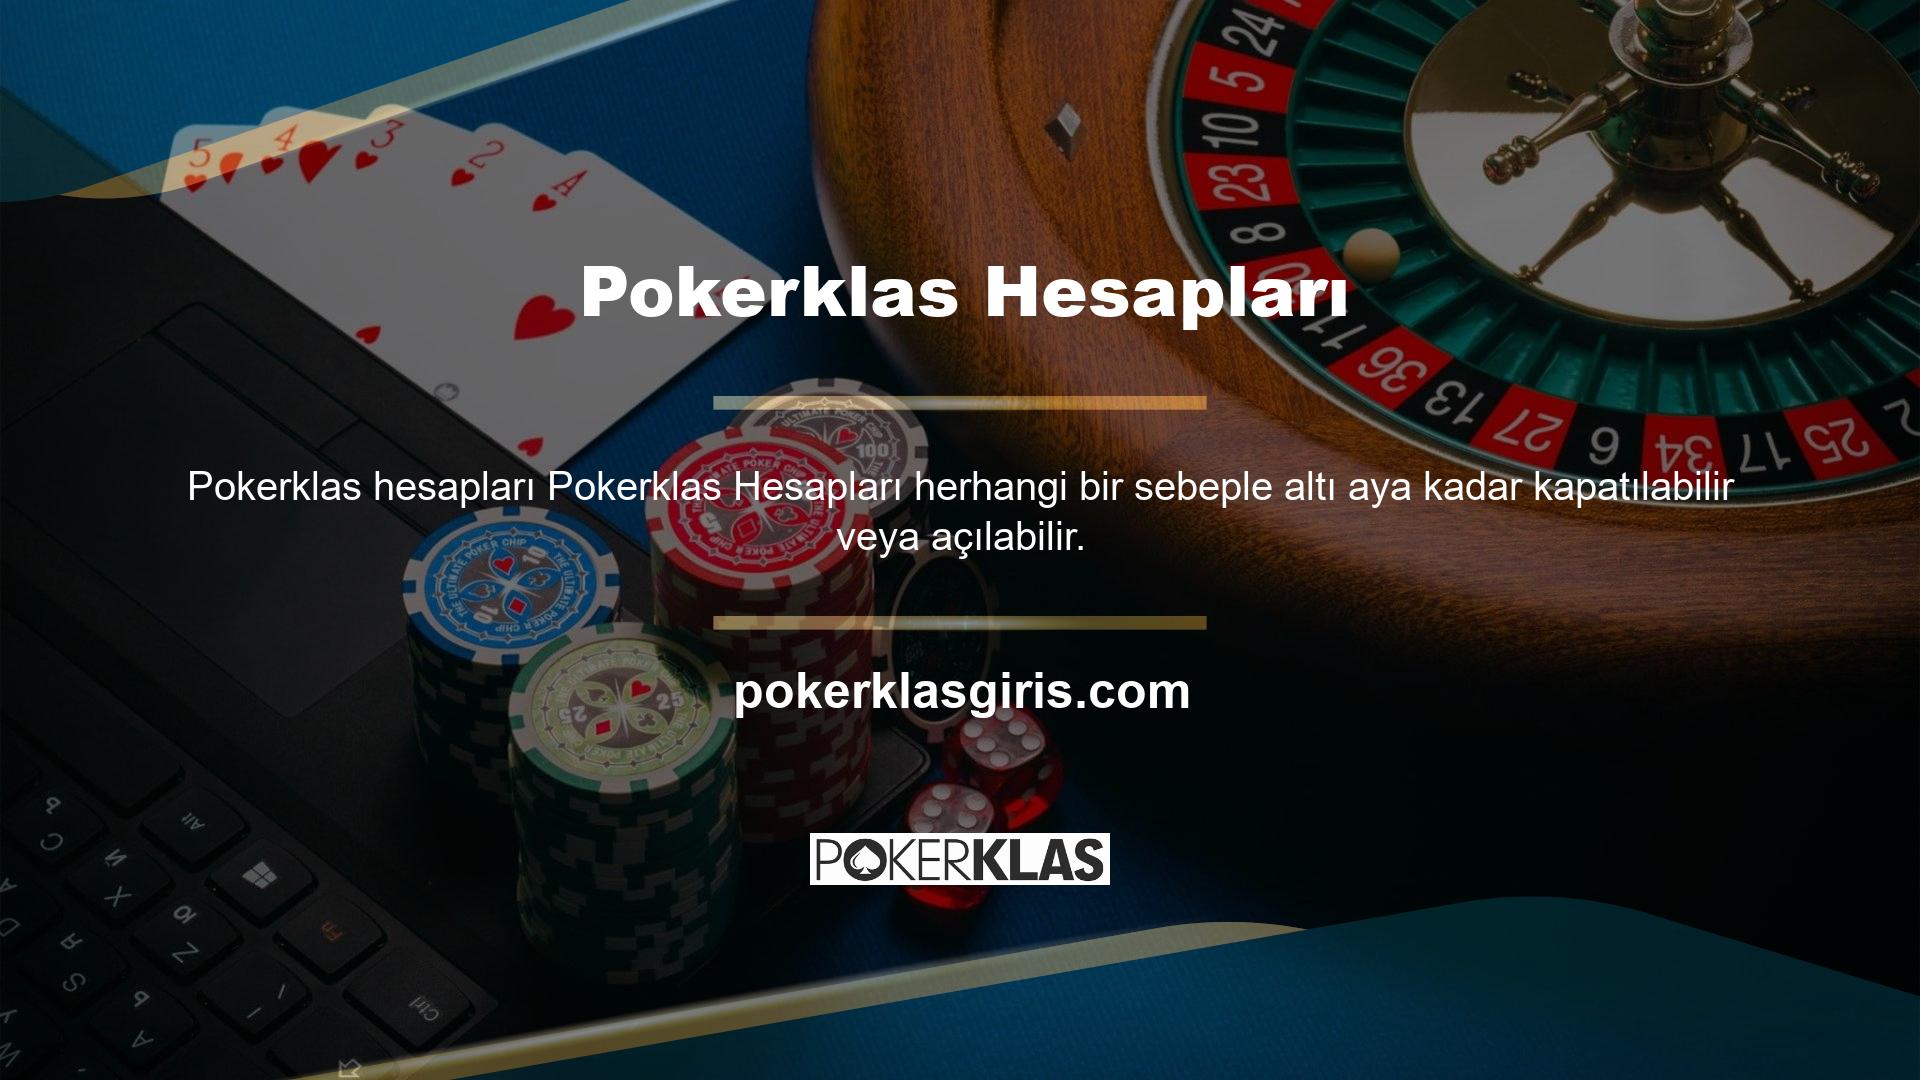 Pokerklas hizmet haber bültenleri nadirdir ve yalnızca size hizmetle ilgili duyuruların gönderilmesi gerektiğinde kullanılır